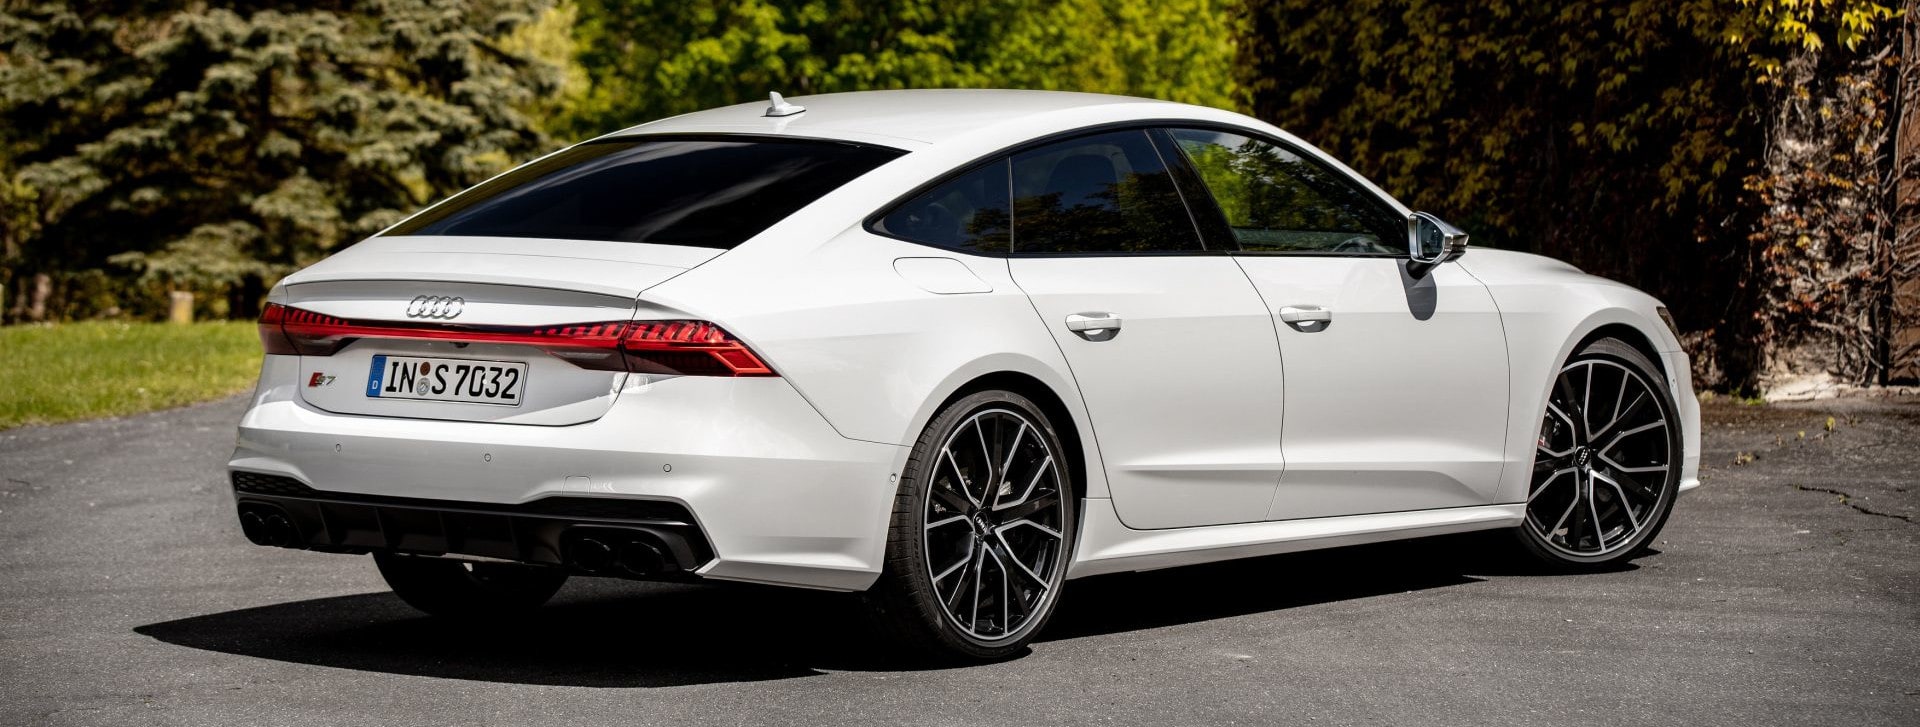 Audi S bílé